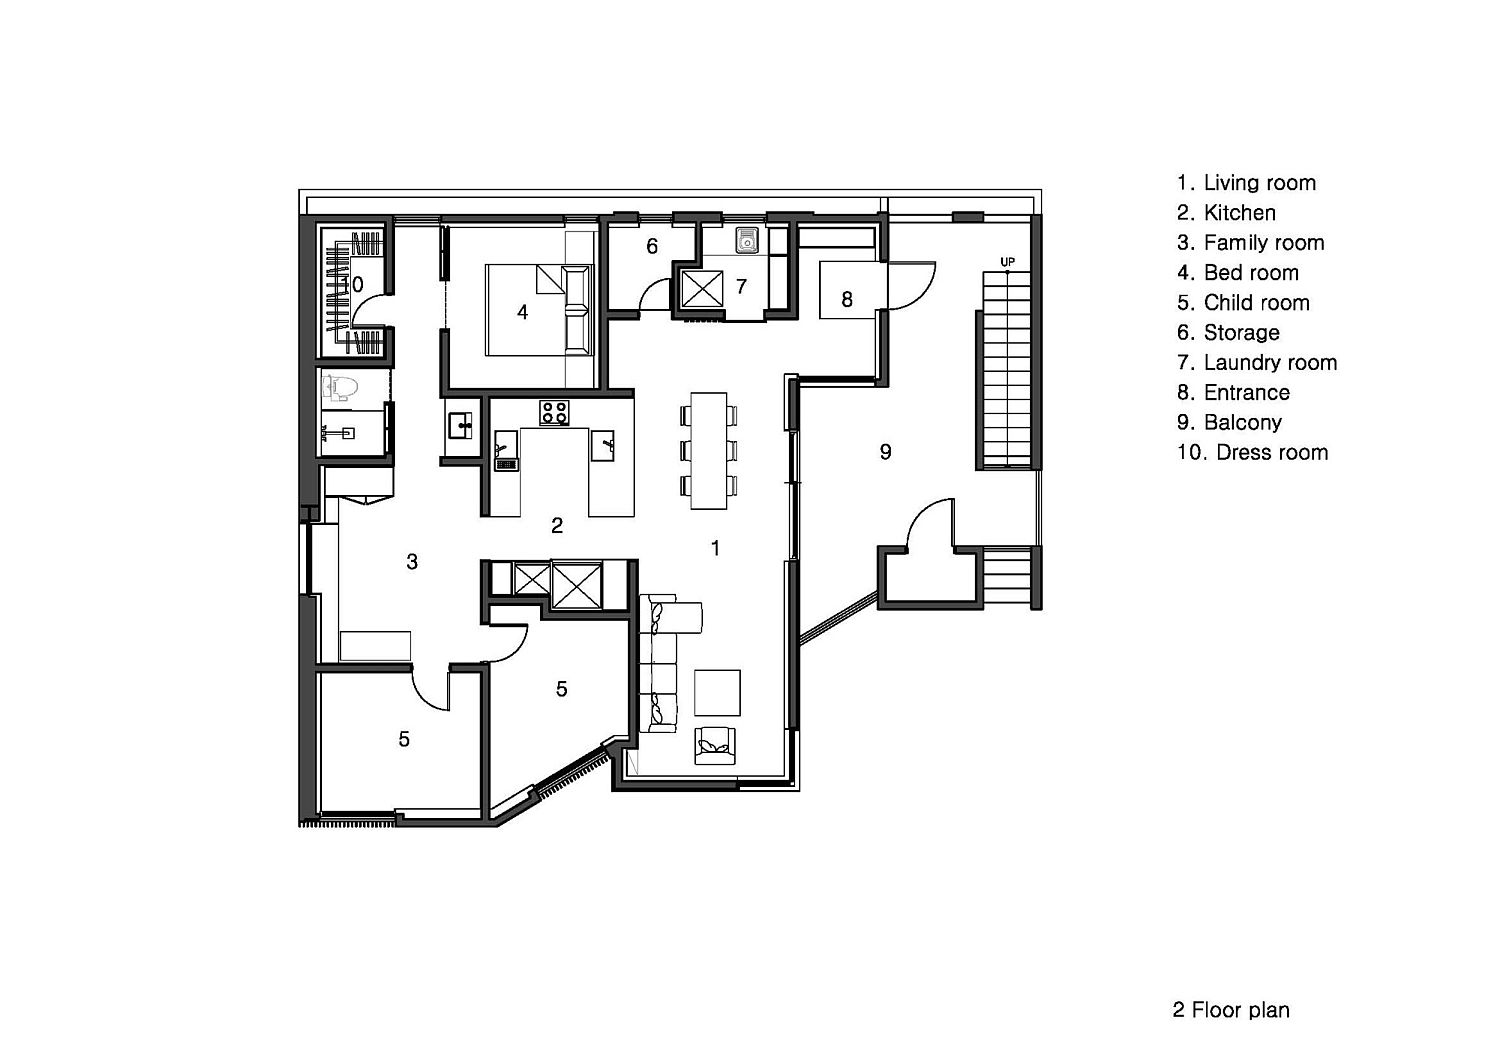 Second level floor plan of Villa Villekulla Café & house